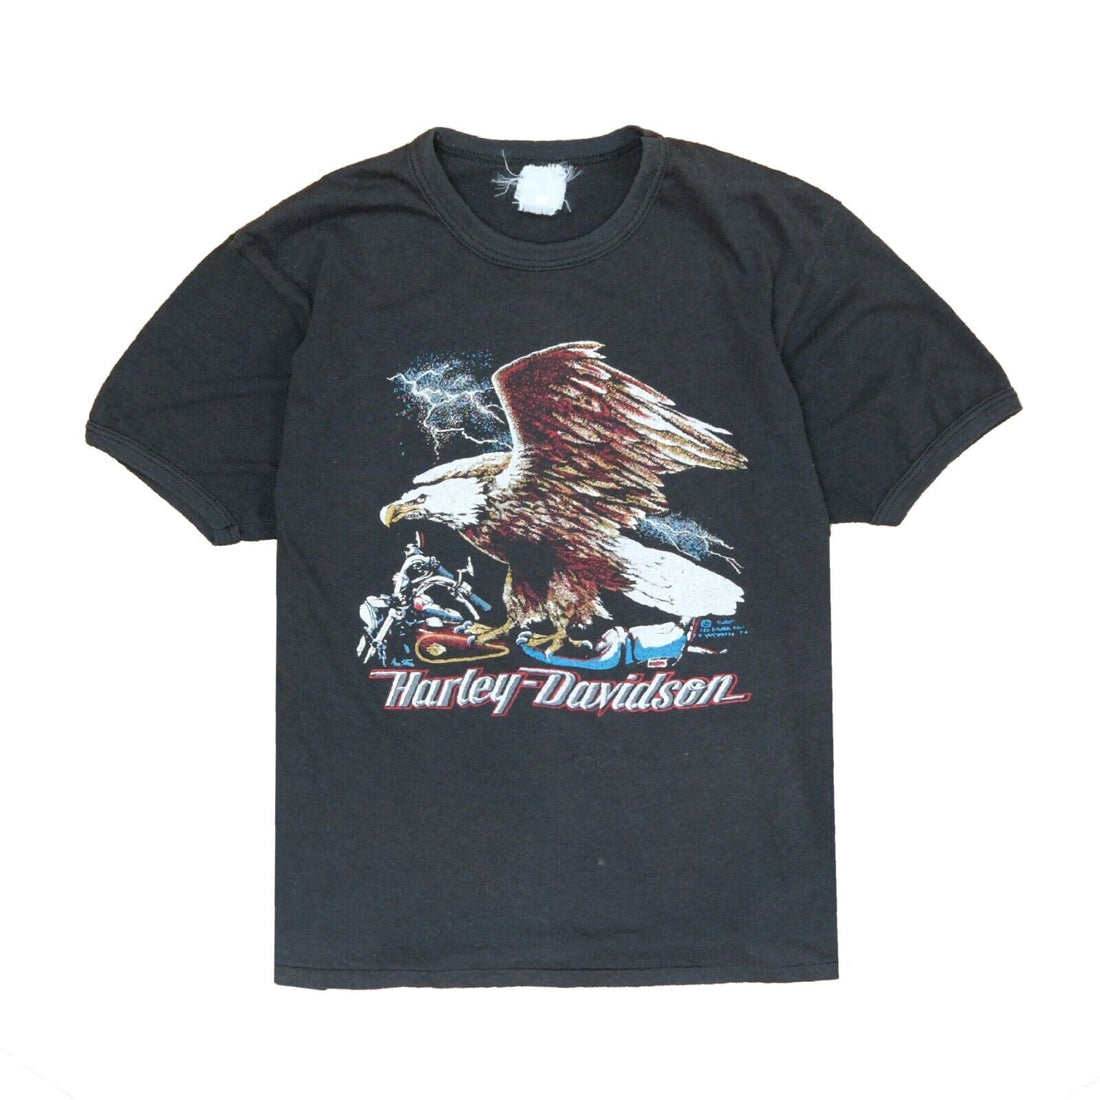 Vintage Harley Davidson Eagle Motorcycle 3D Emblem T-Shirt Size Small 1985 80s